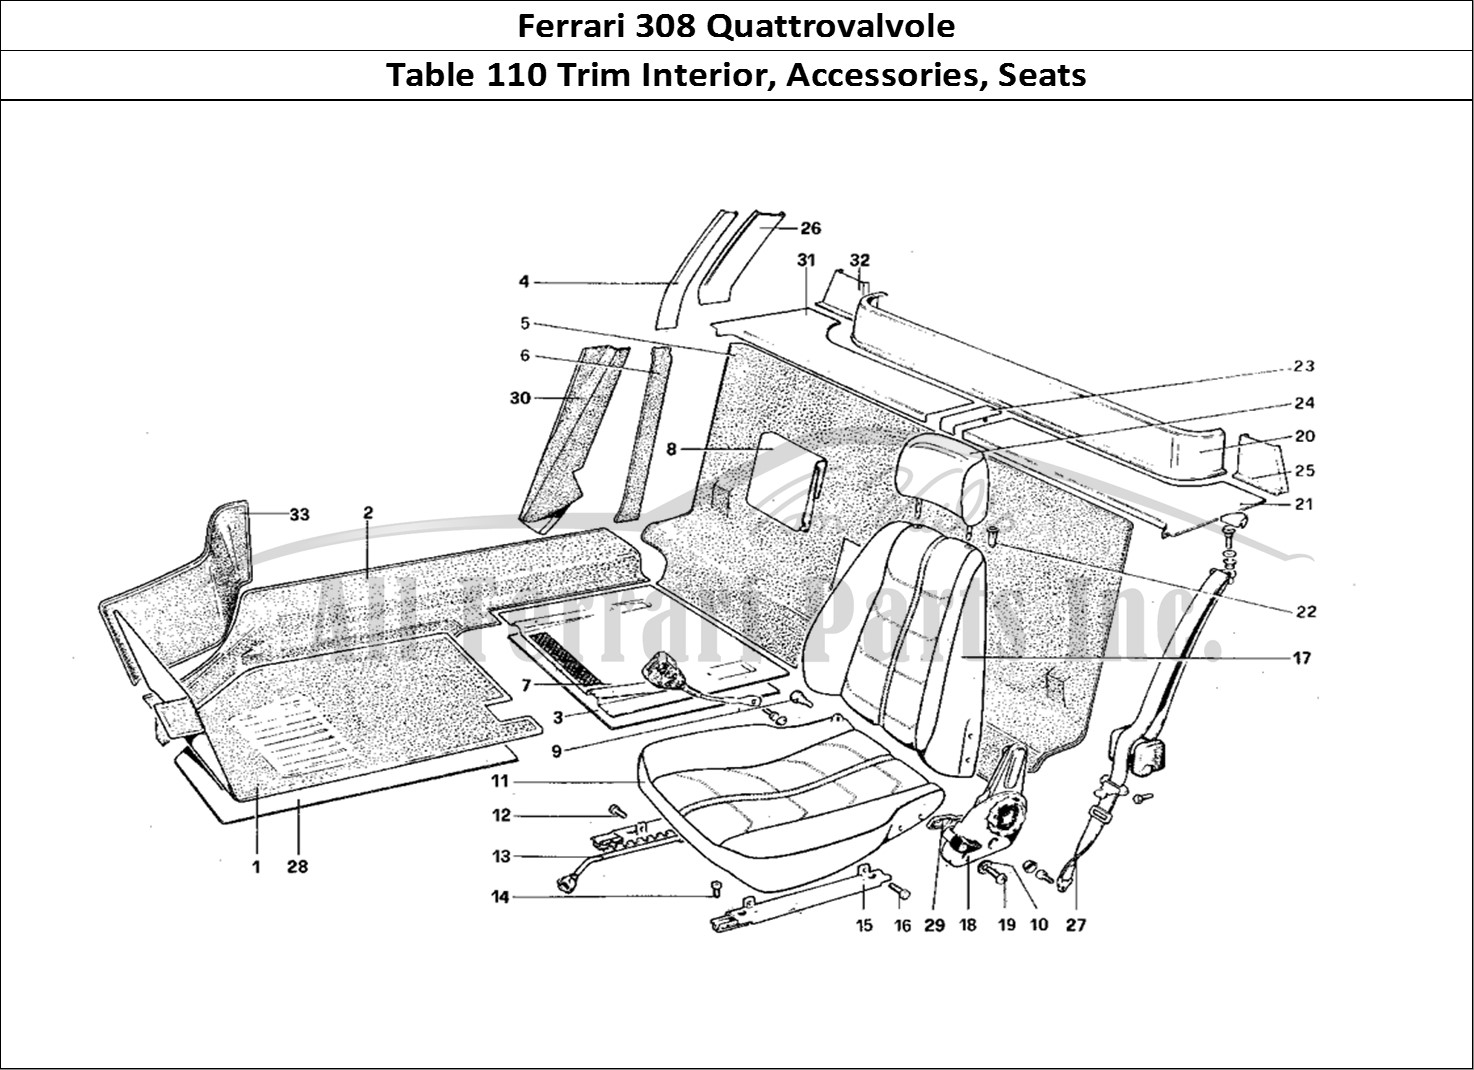 Ferrari Parts Ferrari 308 Quattrovalvole (1985) Page 110 Interior Trim, Accessorie